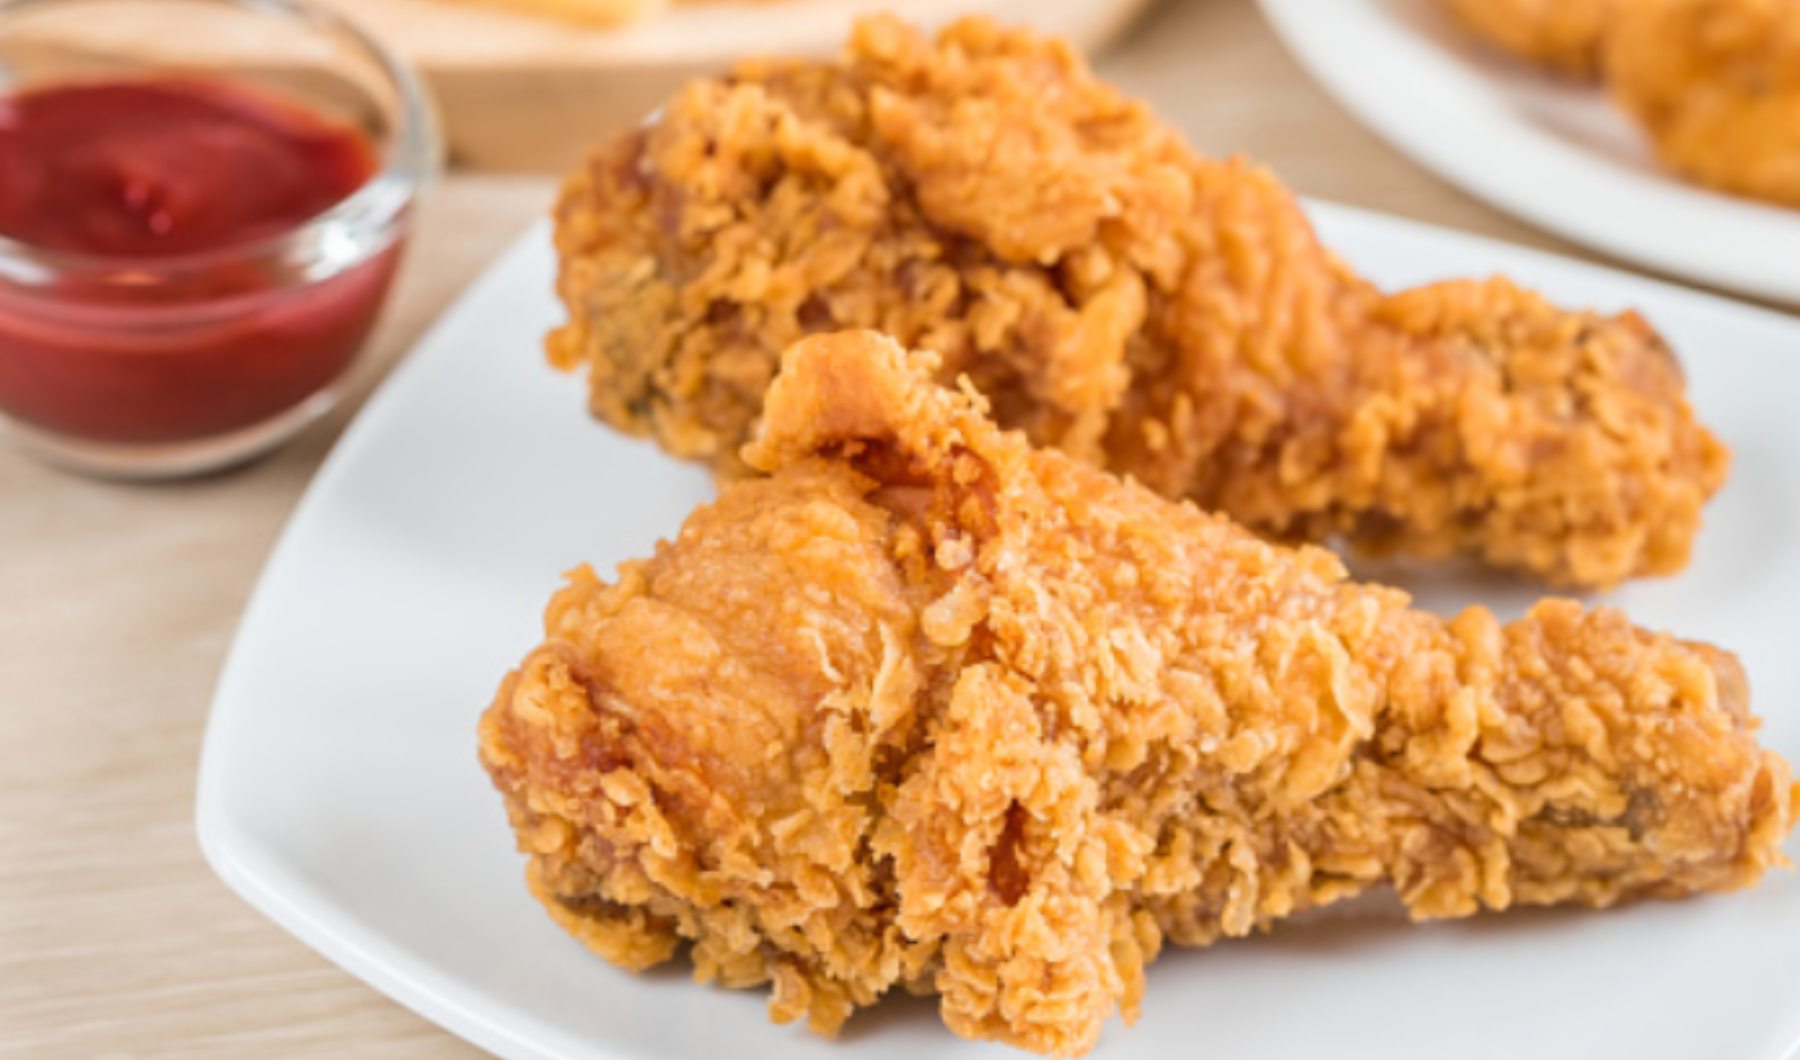 Cómo hacer pollo al estilo KFC en la airfryer?